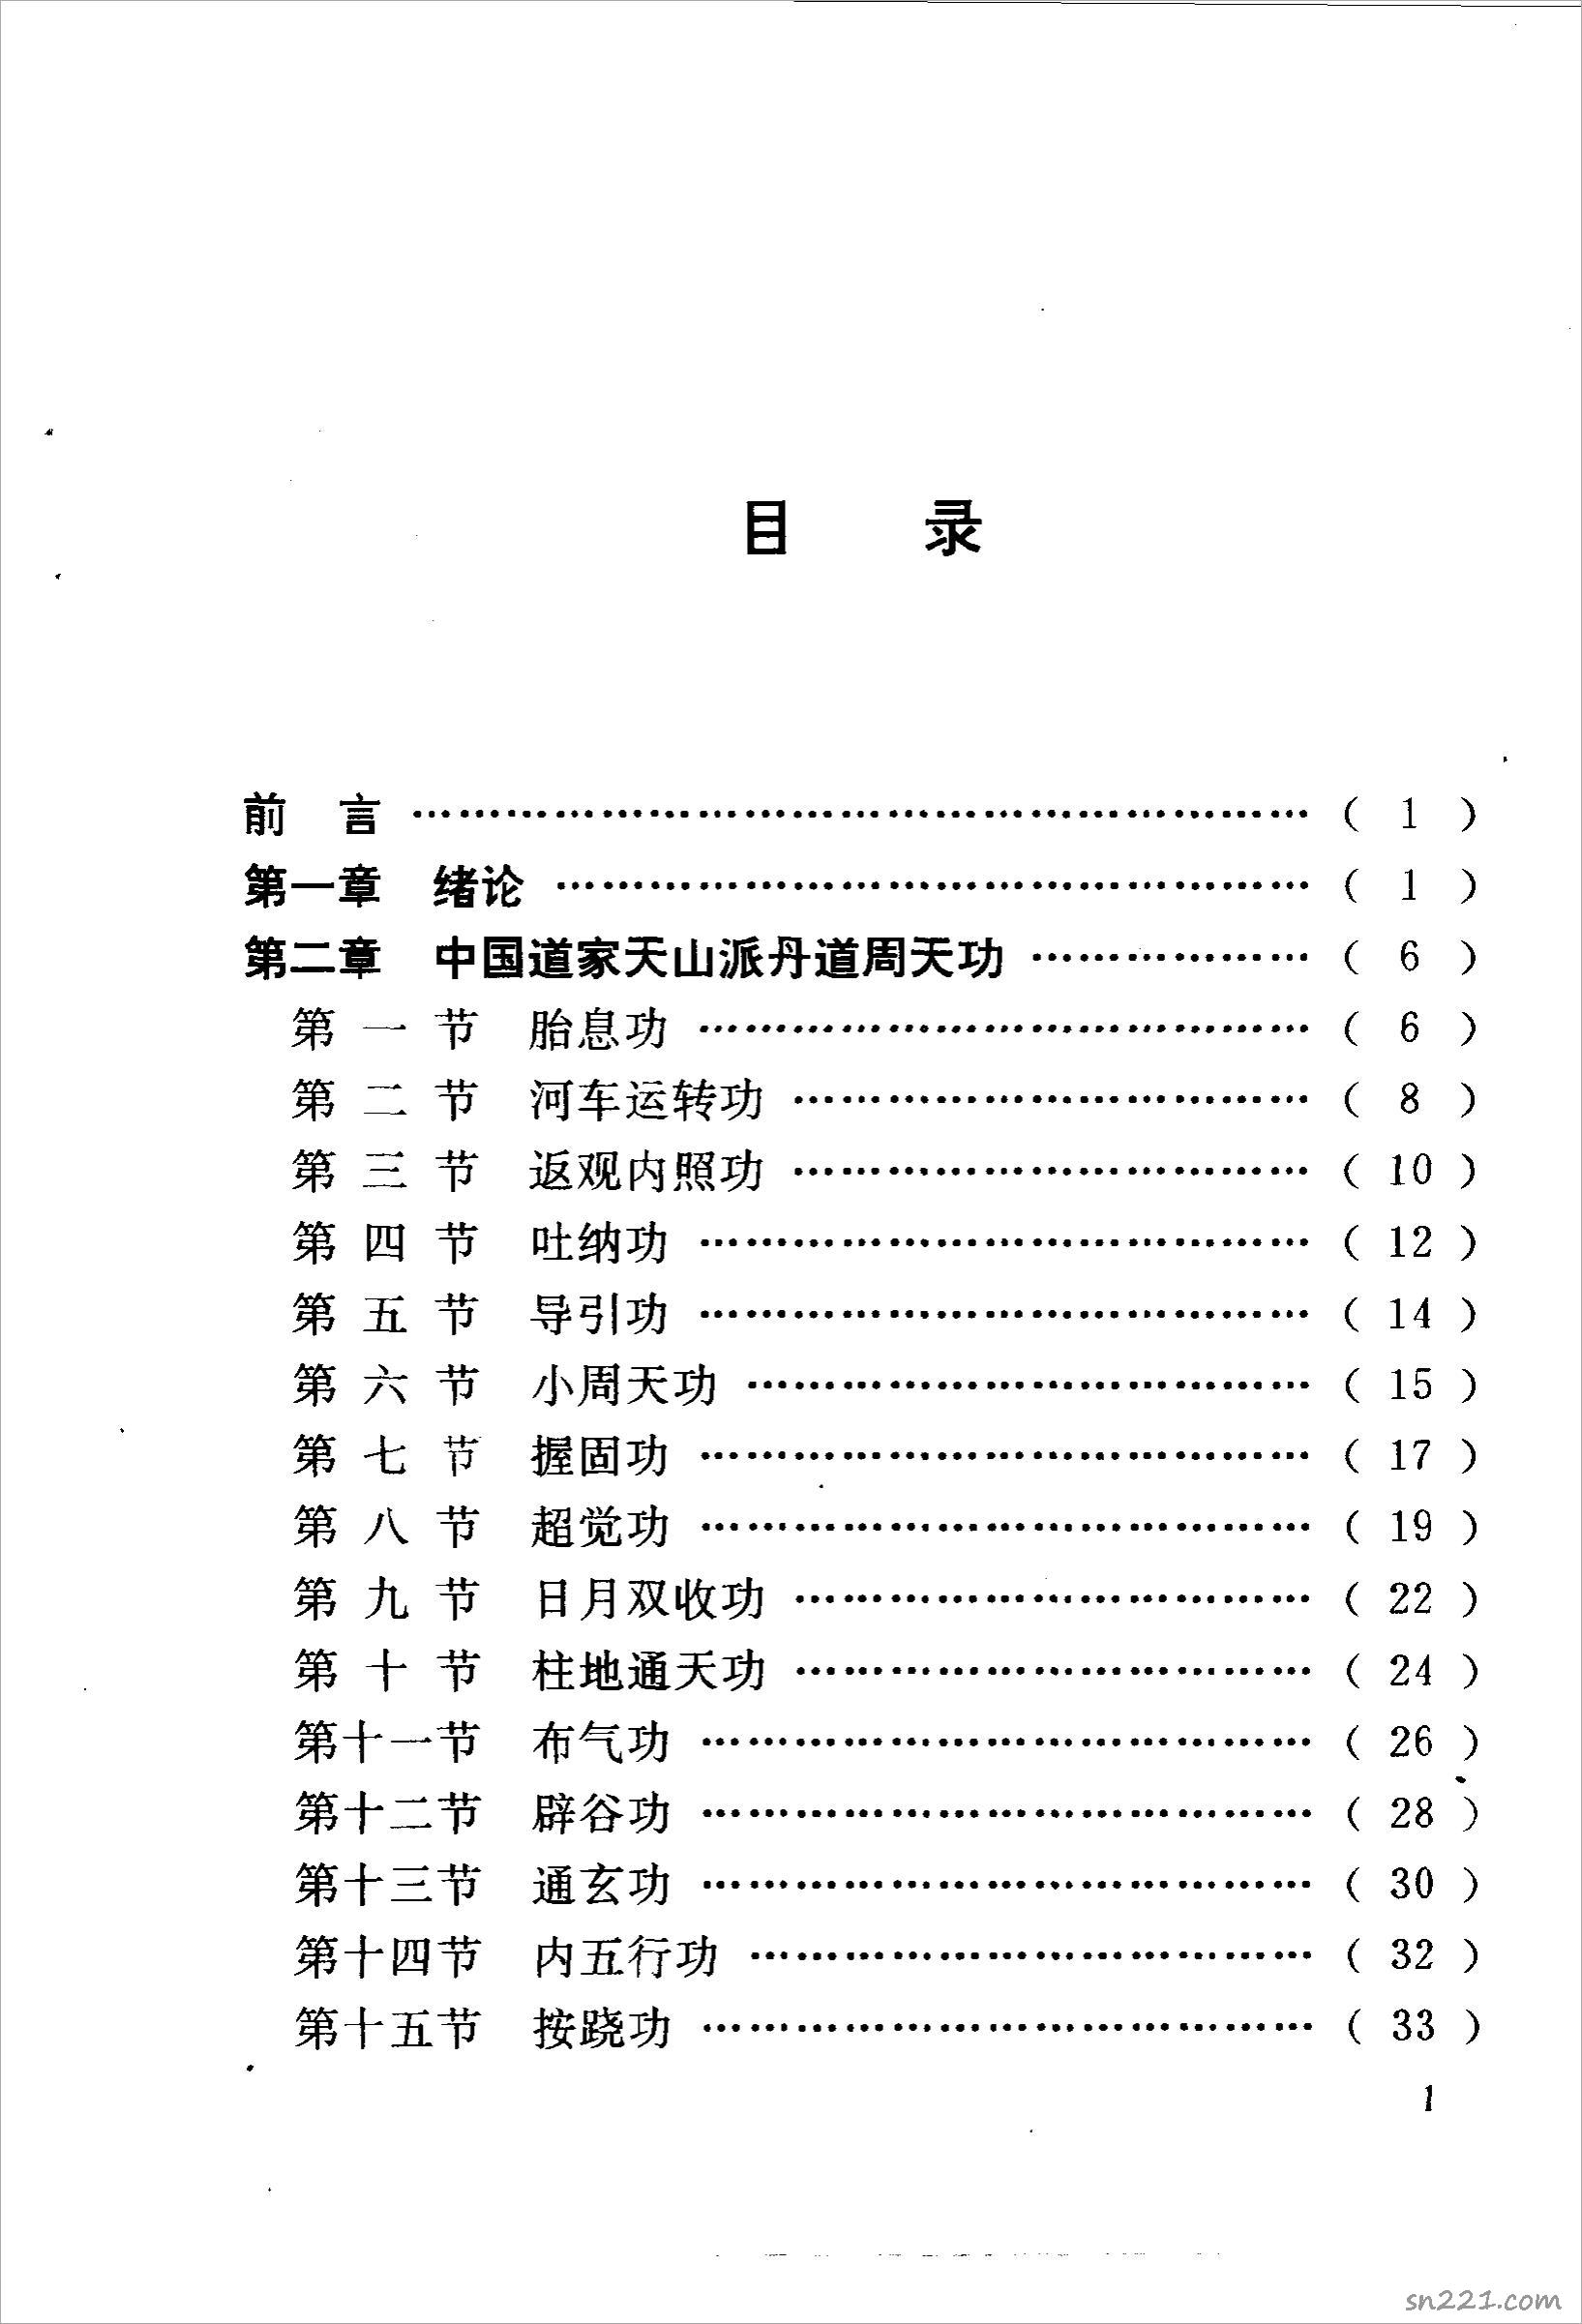 丹道周天功(完整版)222頁.pdf